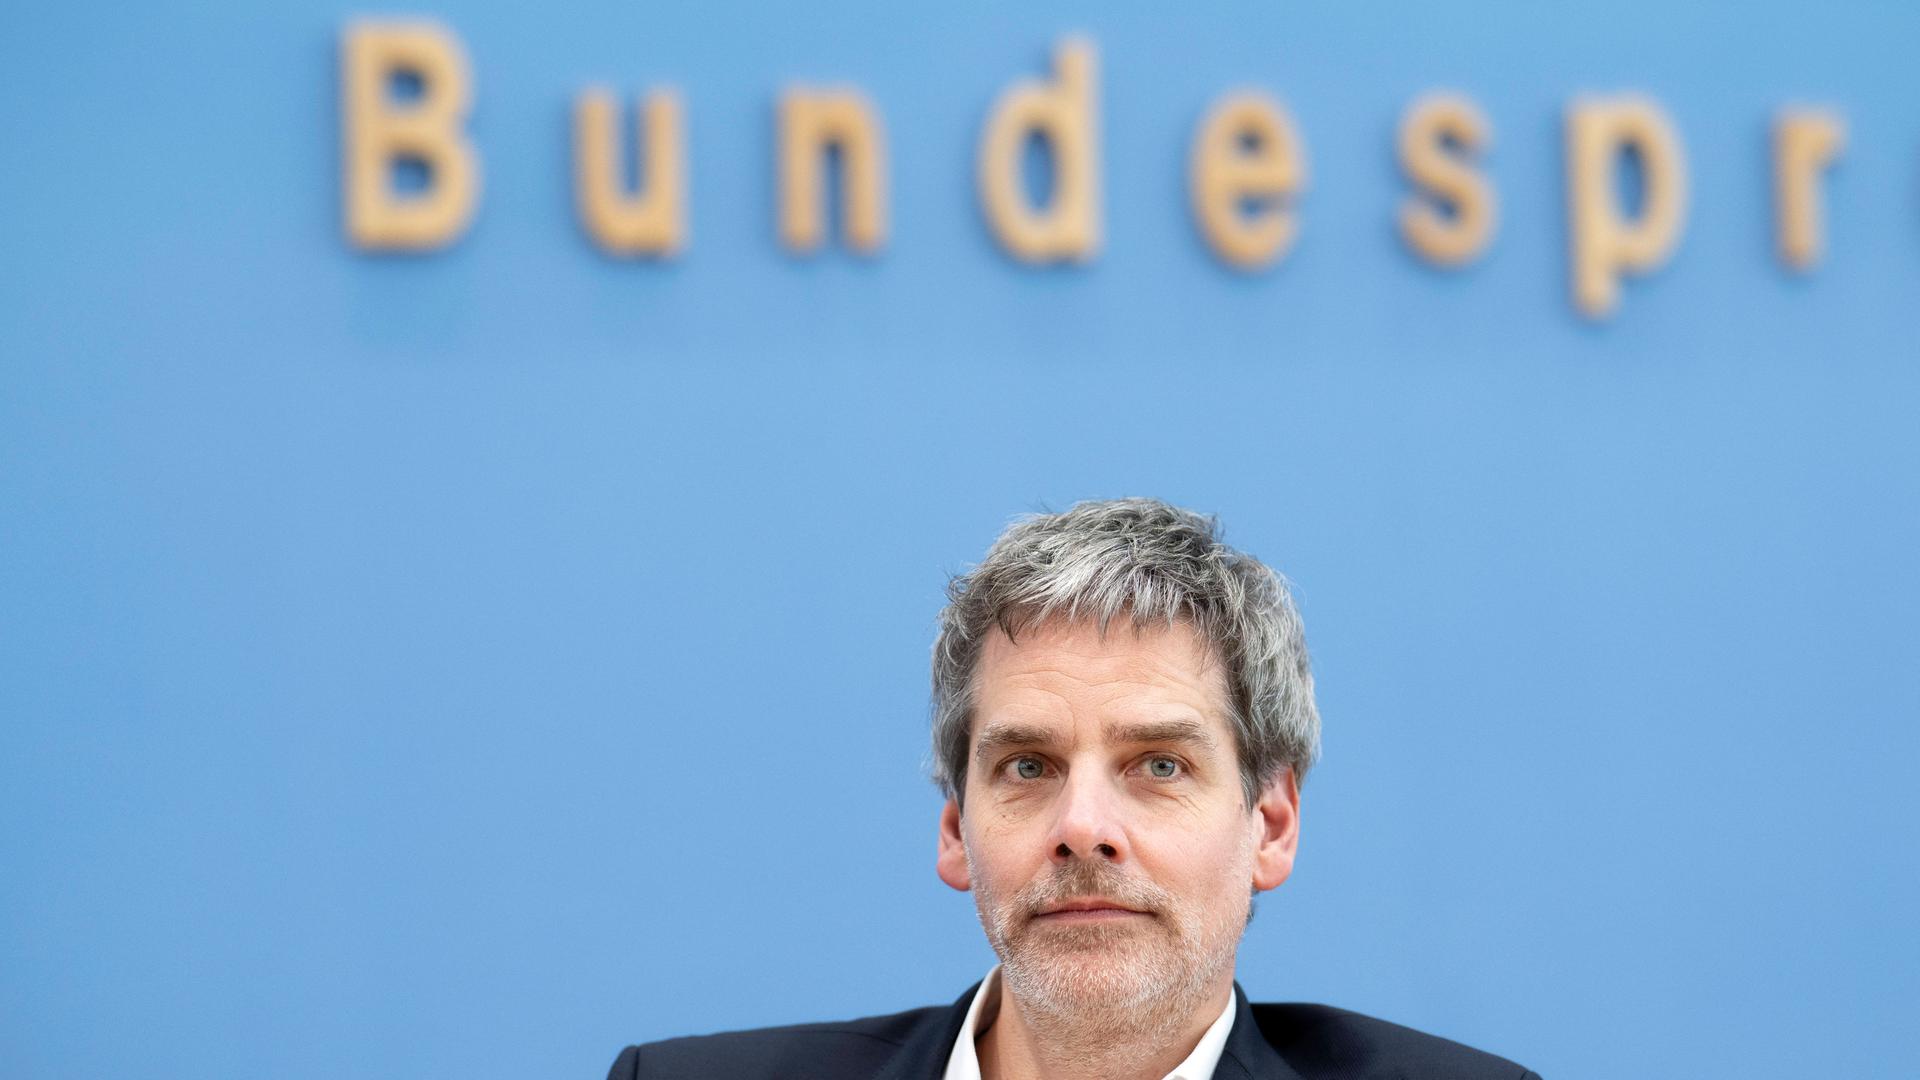 Bundespressesprecher Steffen Hebestreit sitzt vor einem blauen Hintergrund und schaut leicht an der Kamera vorbei. Im Hintergrund ist unscharf und angeschnitten das Logo der Bundespressekonferenz zu sehen.